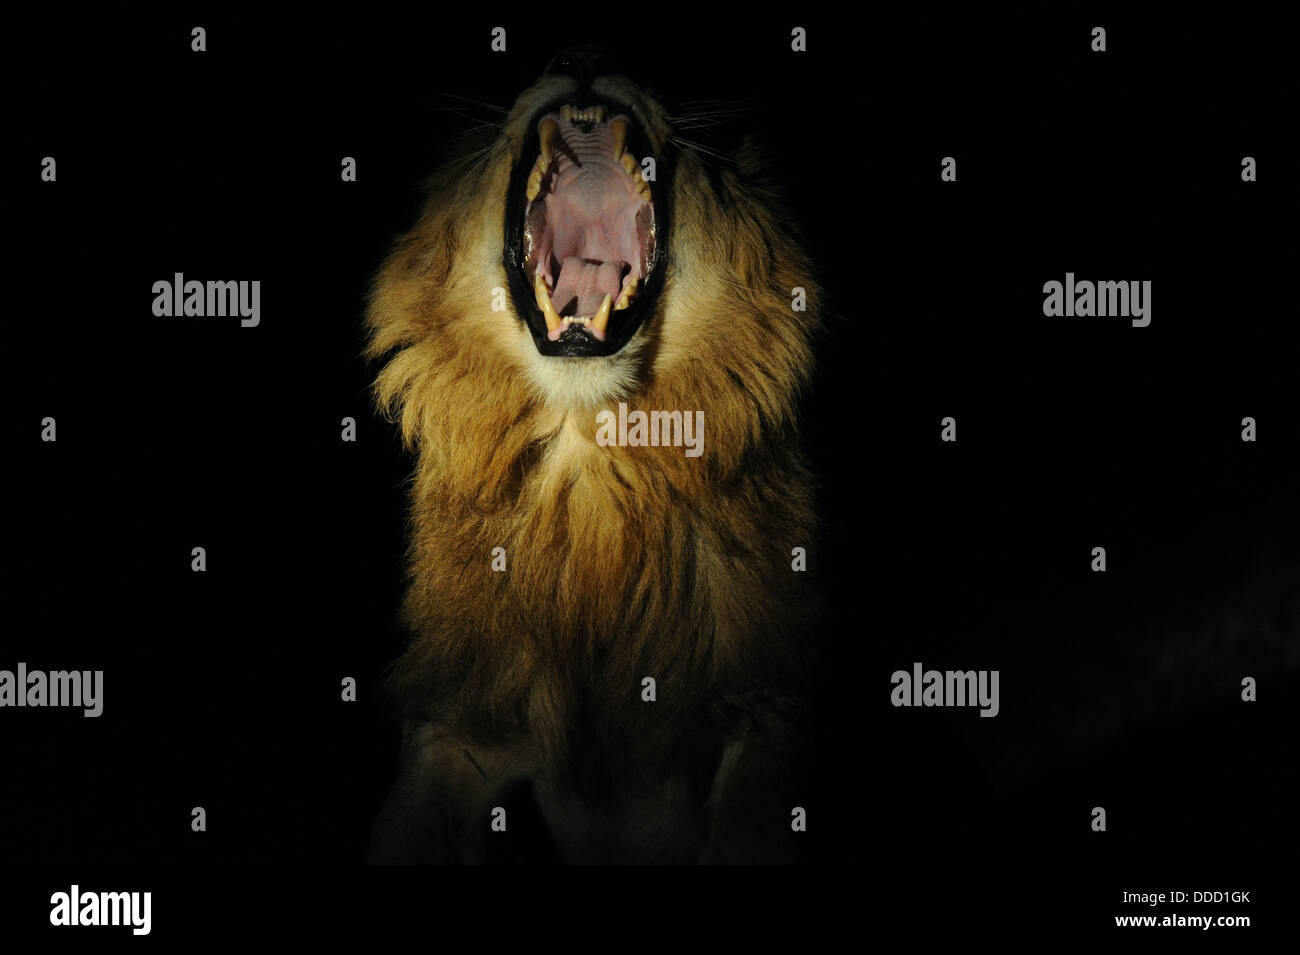 männliche Löwen Gähnen in der Nacht, Porträt Stockfoto